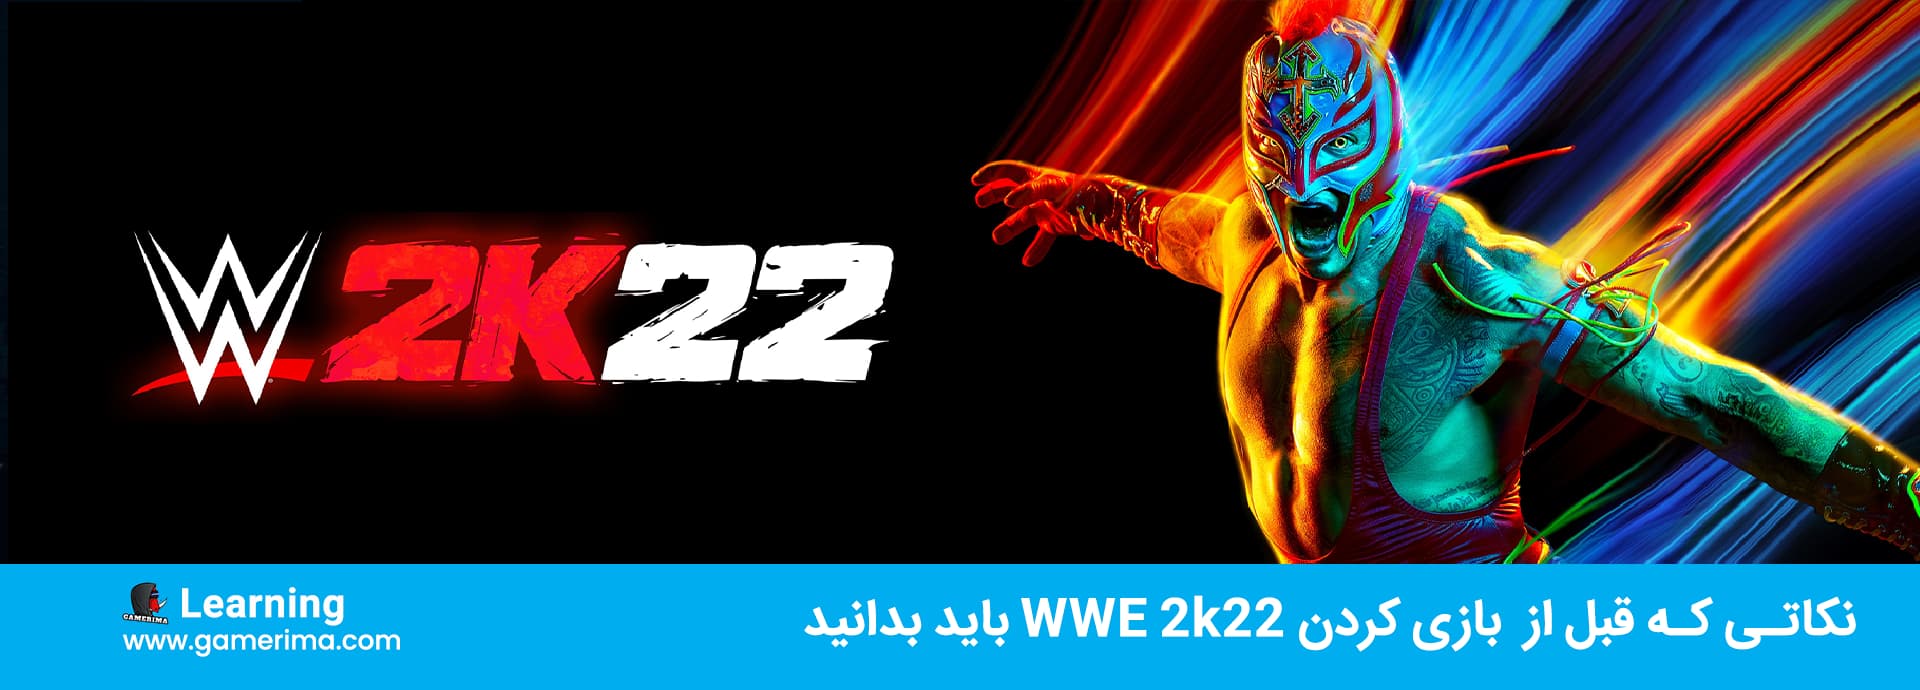 چهار نکته که در مورد WWE 2K22 قبل از تجربه باید بدانید